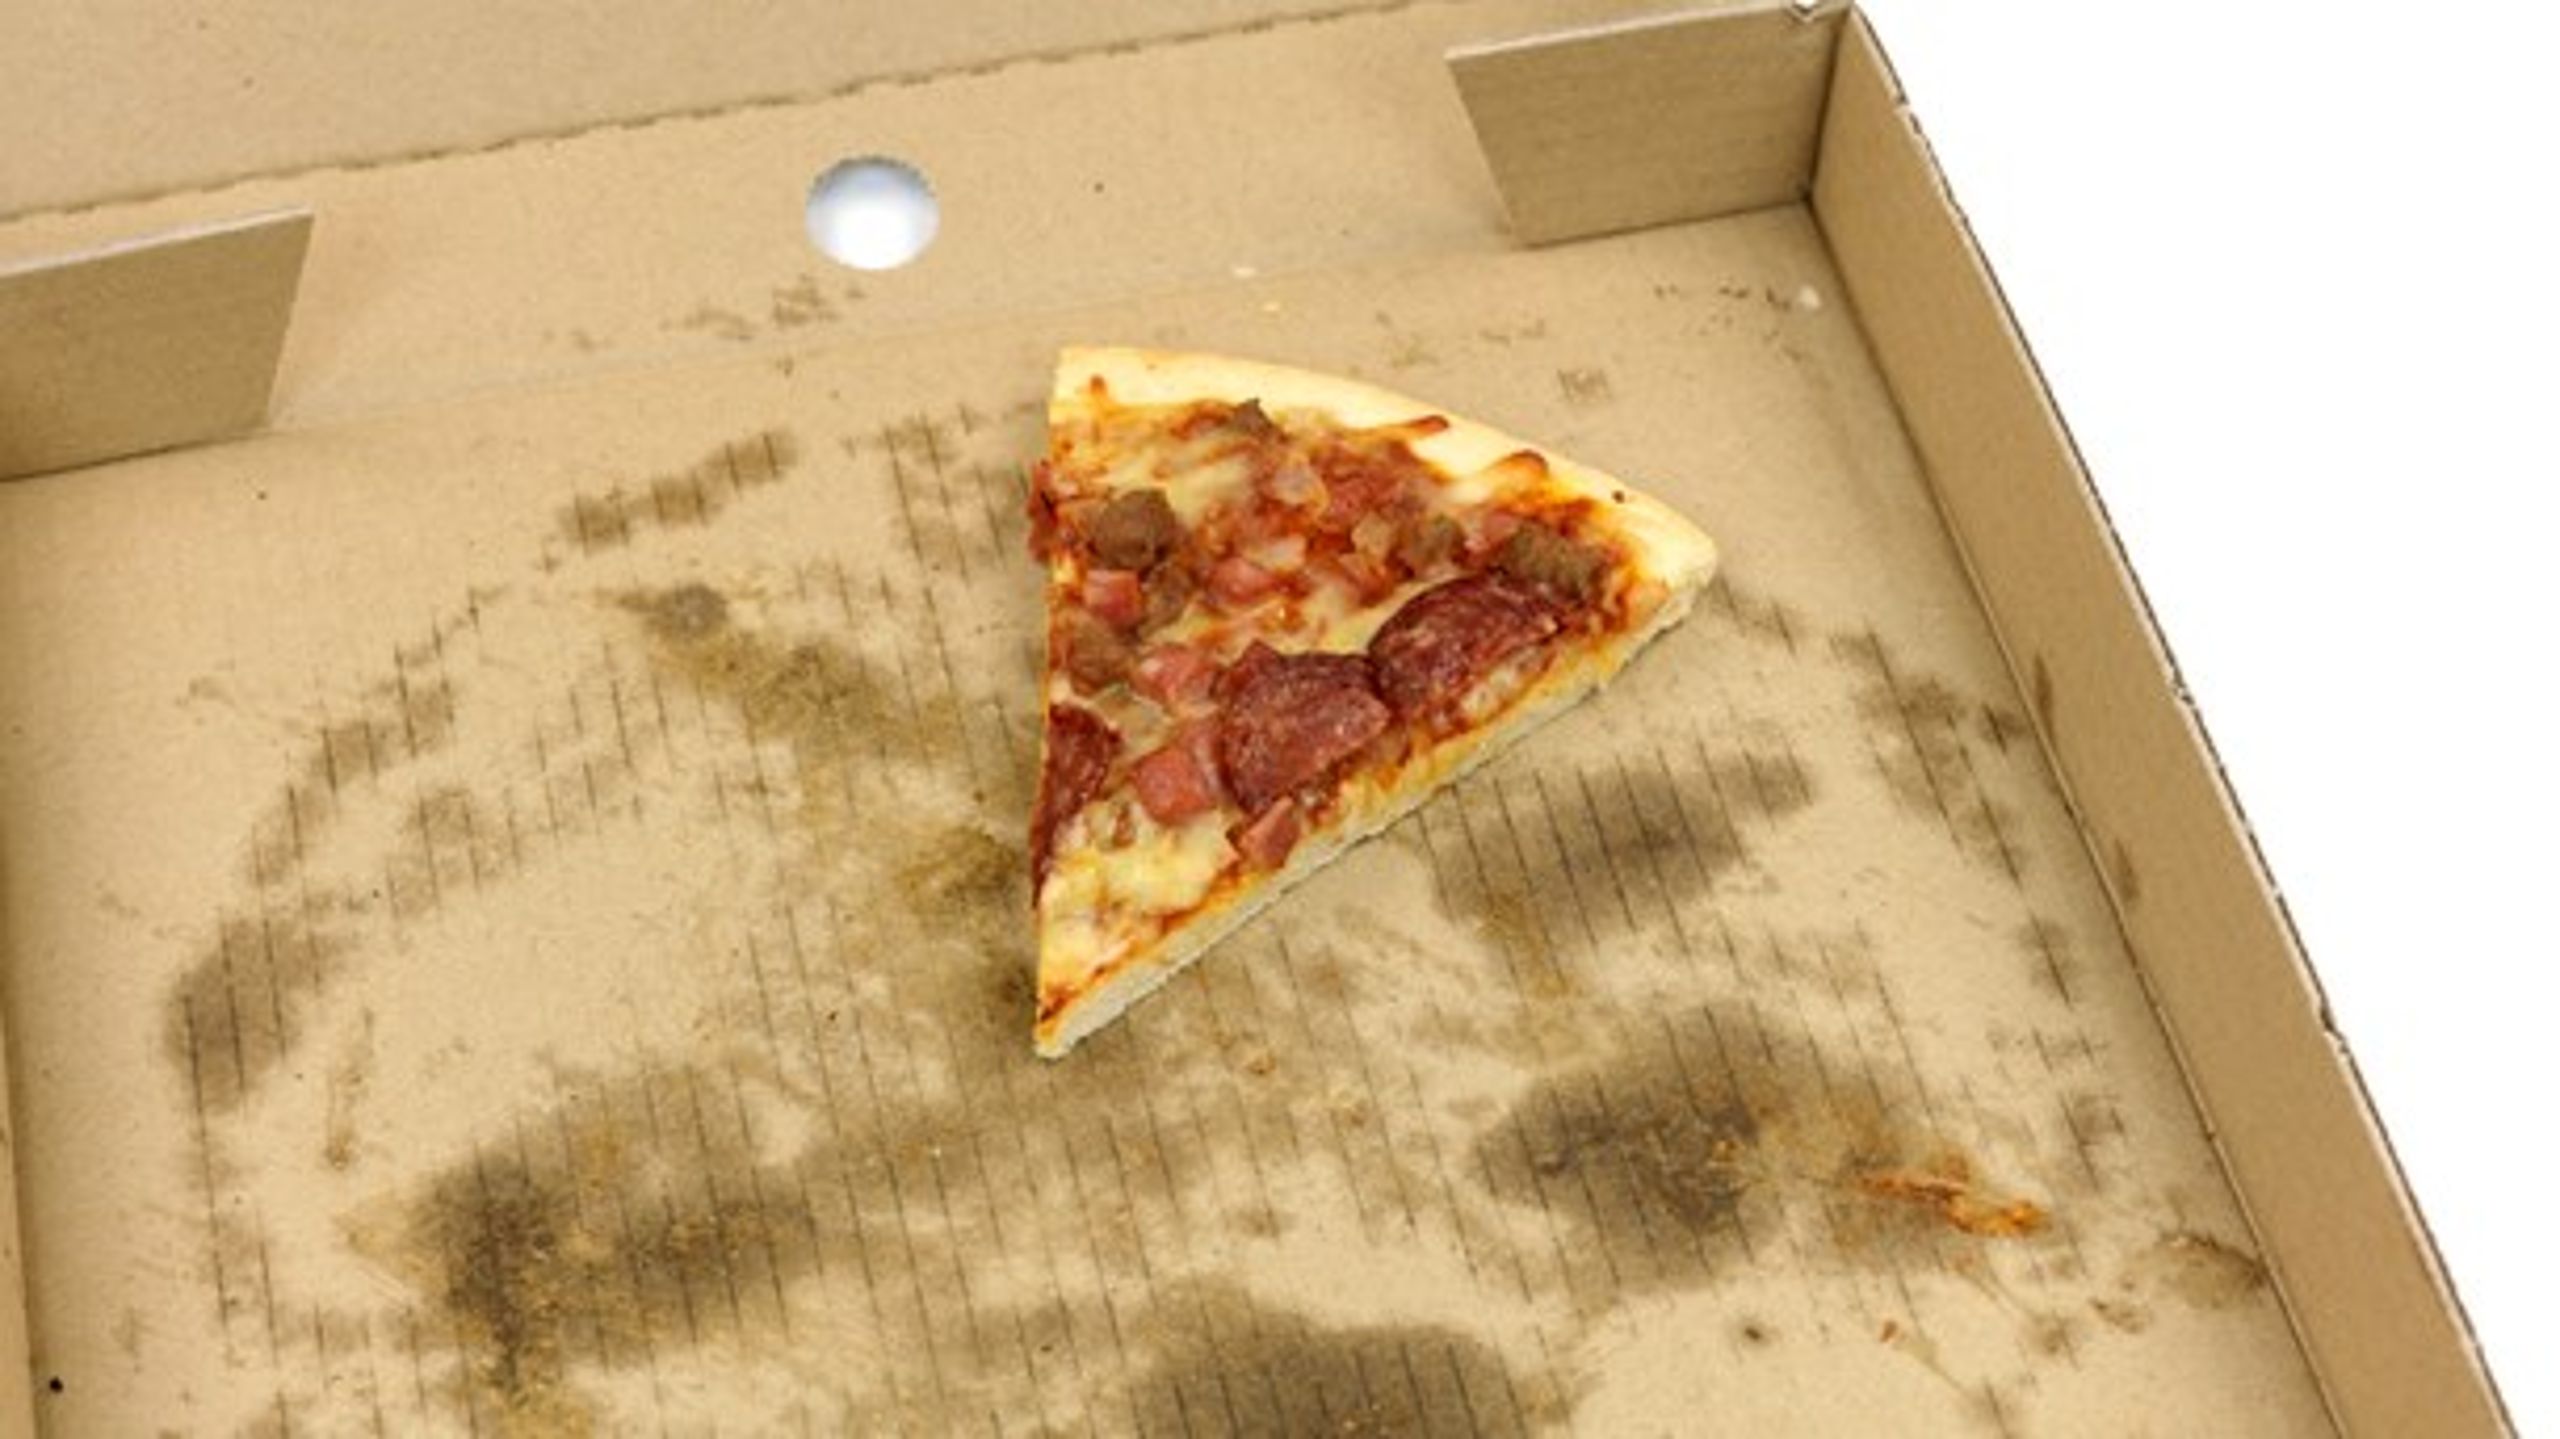 Pizzabakker er blandt de ting, der er&nbsp;kommet under mistanke for at indeholde hormonforstyrrende stoffer.